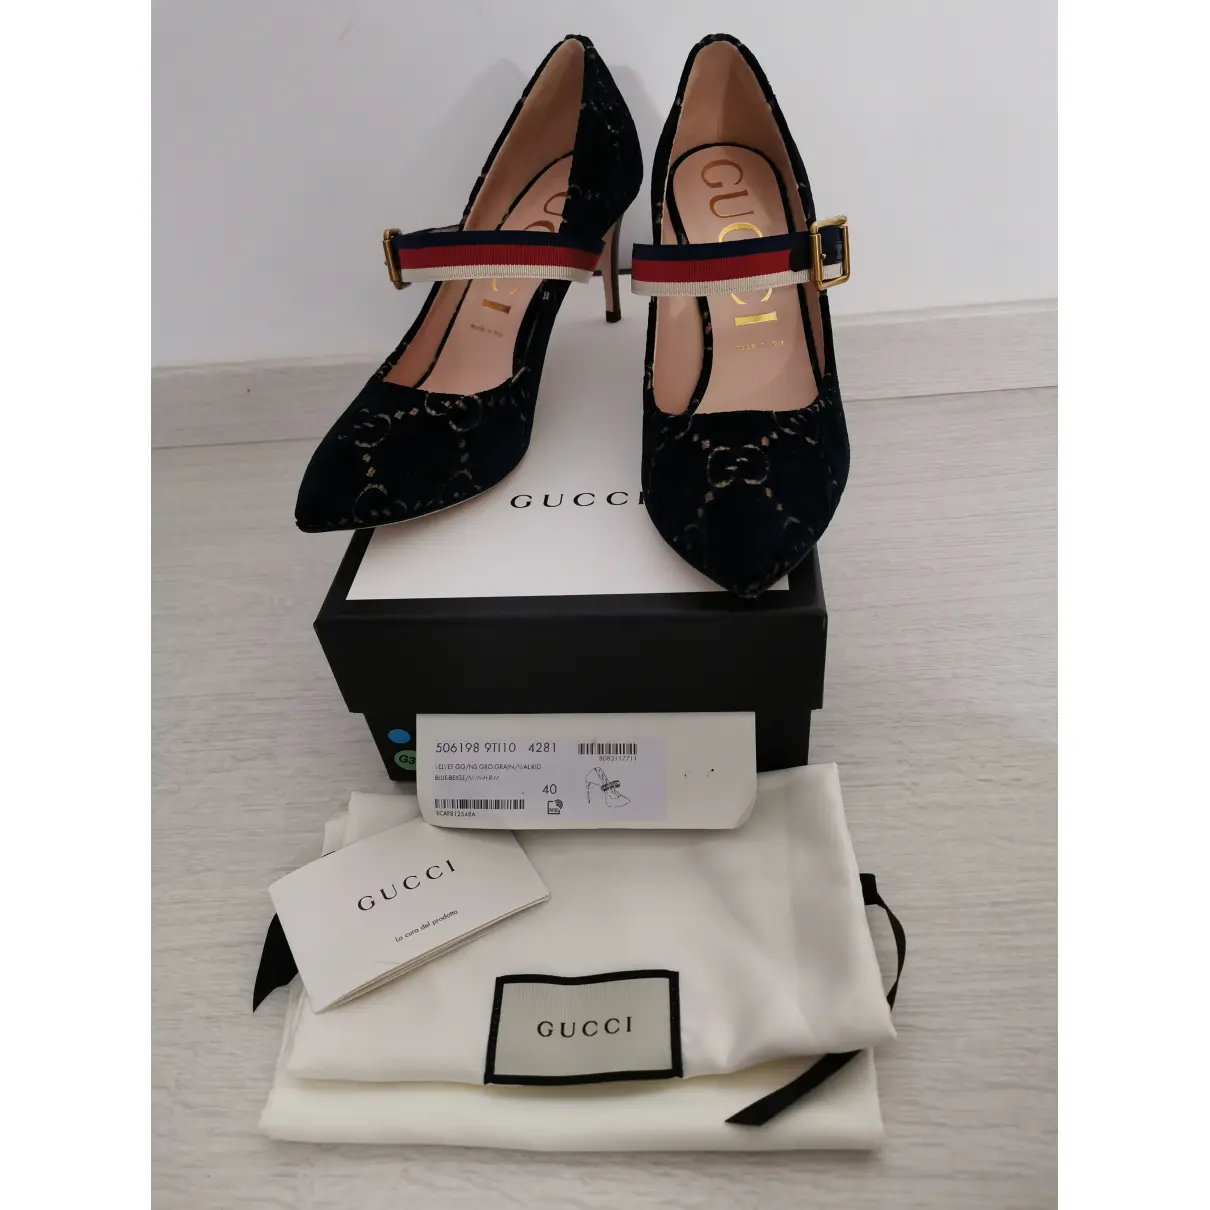 Buy Gucci Sylvie velvet heels online